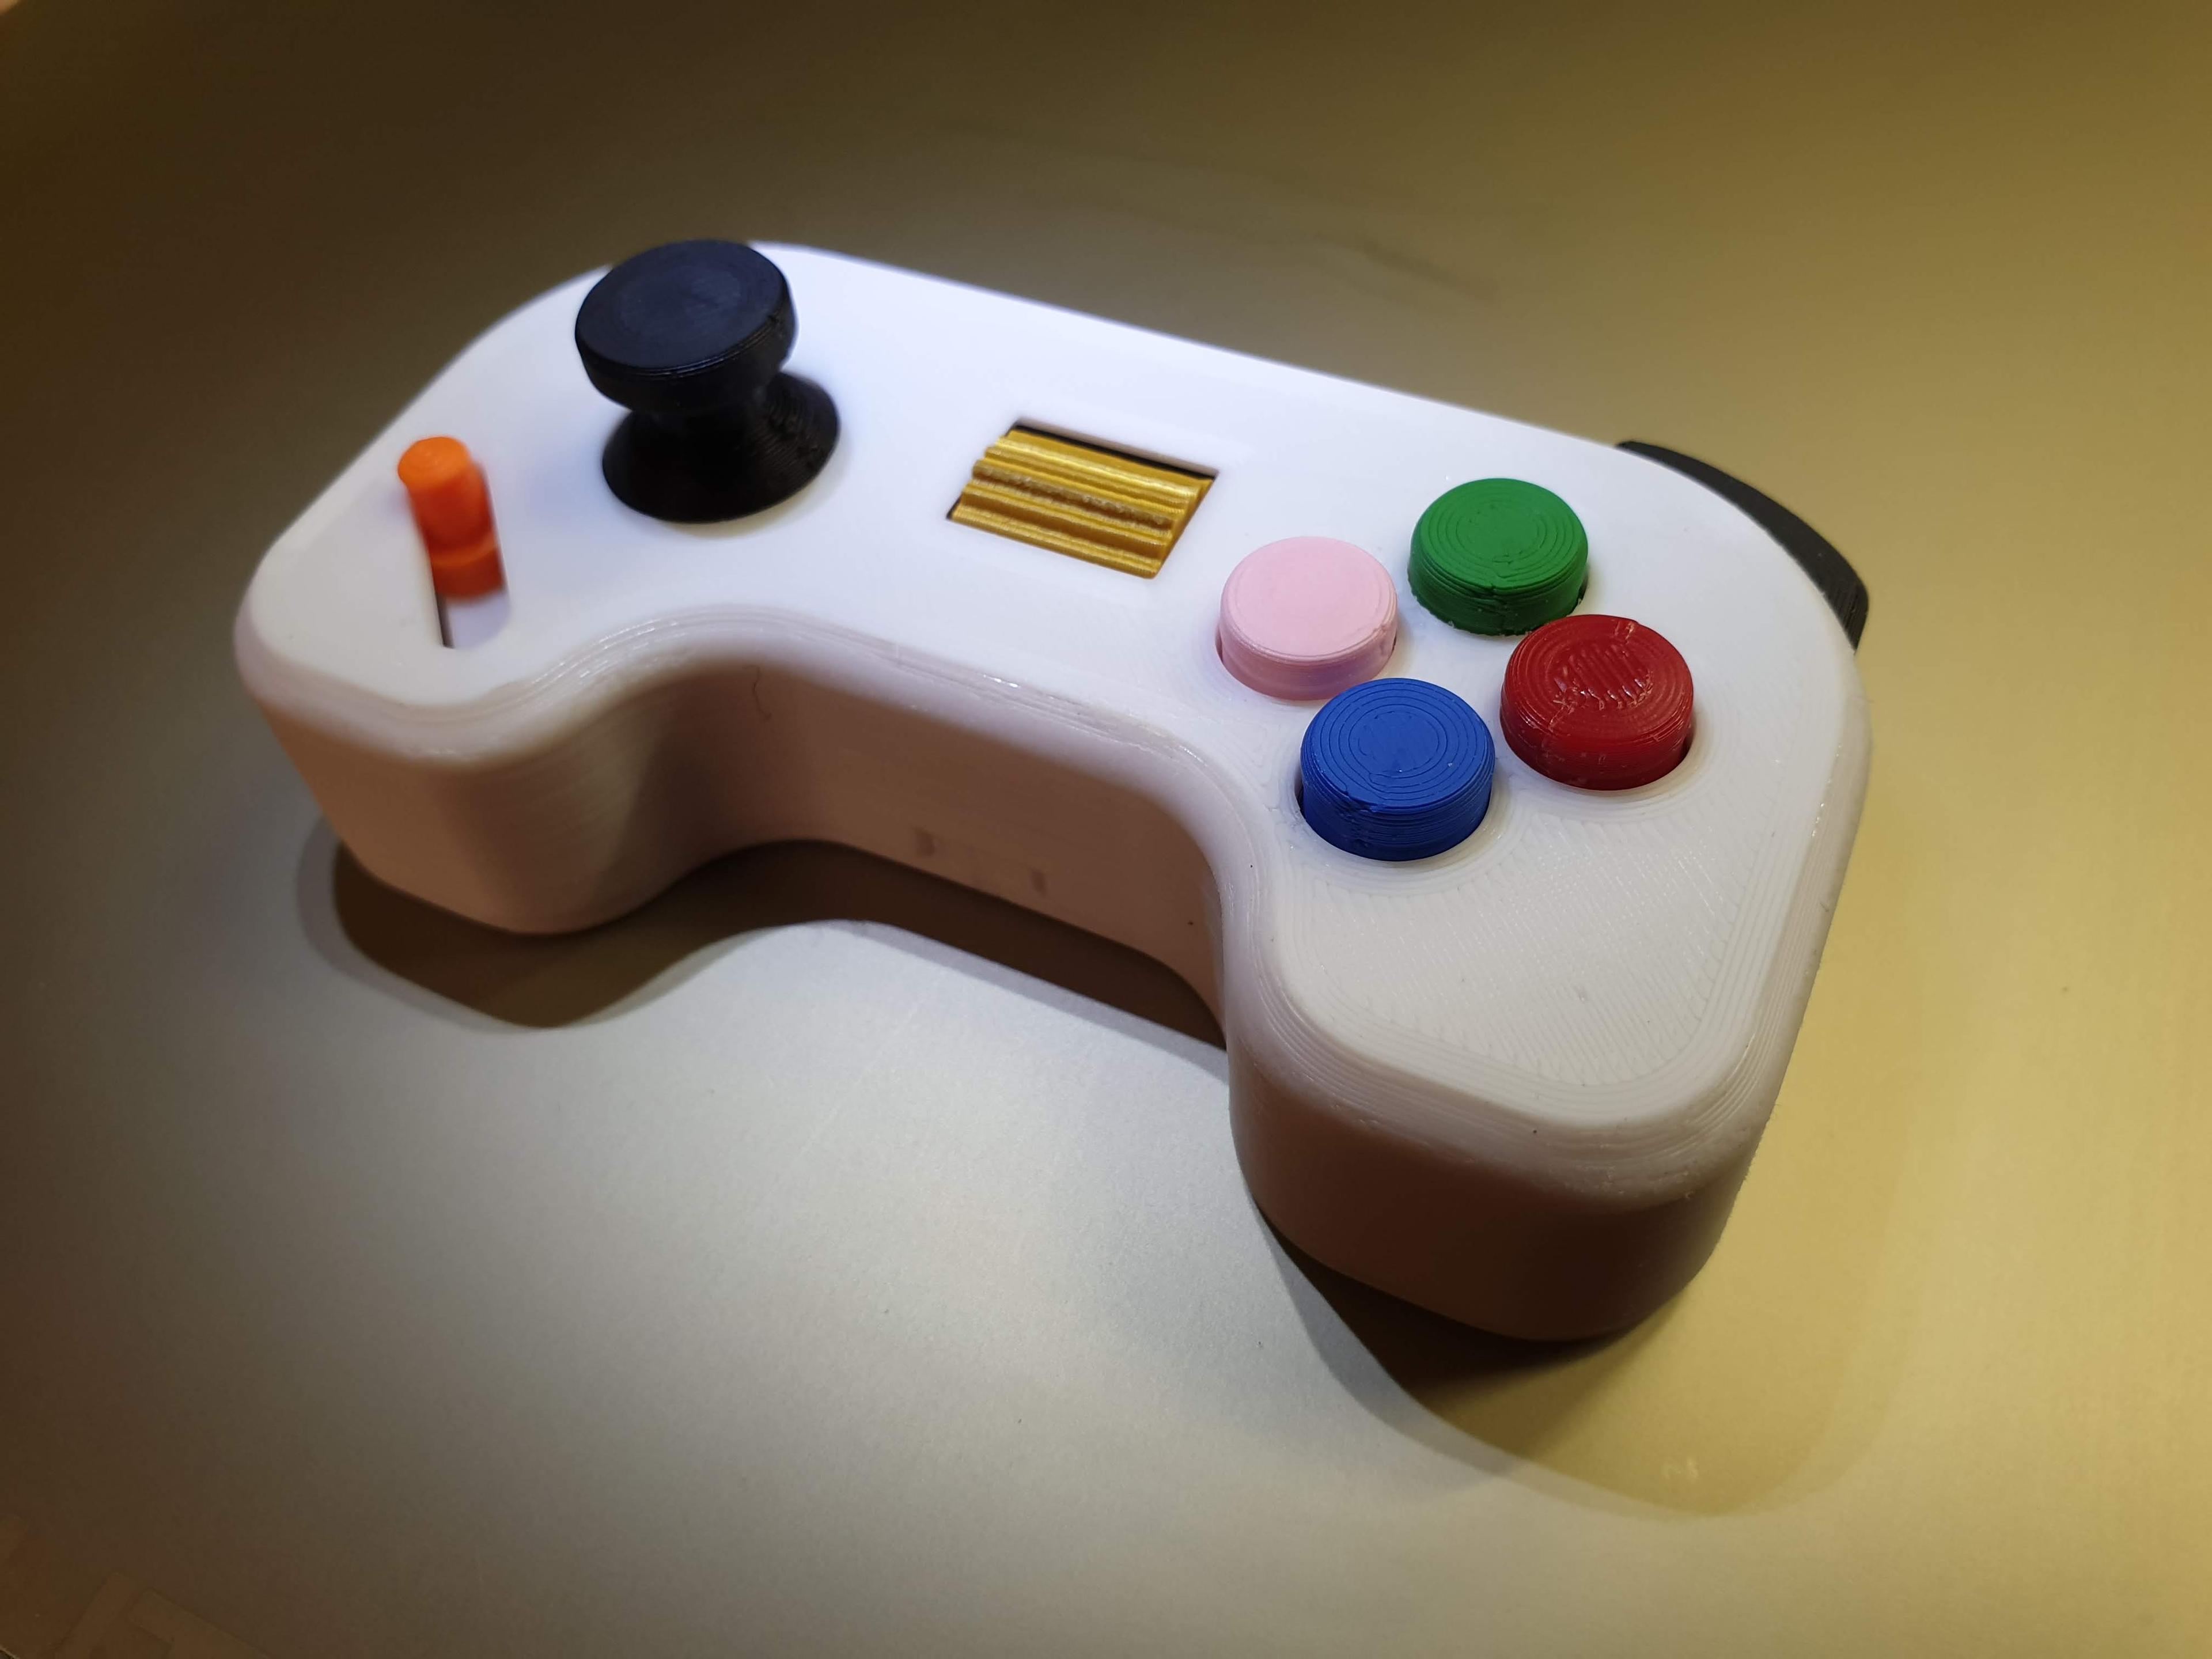 Mini Controller Toy / Fidget Gadget 3d model